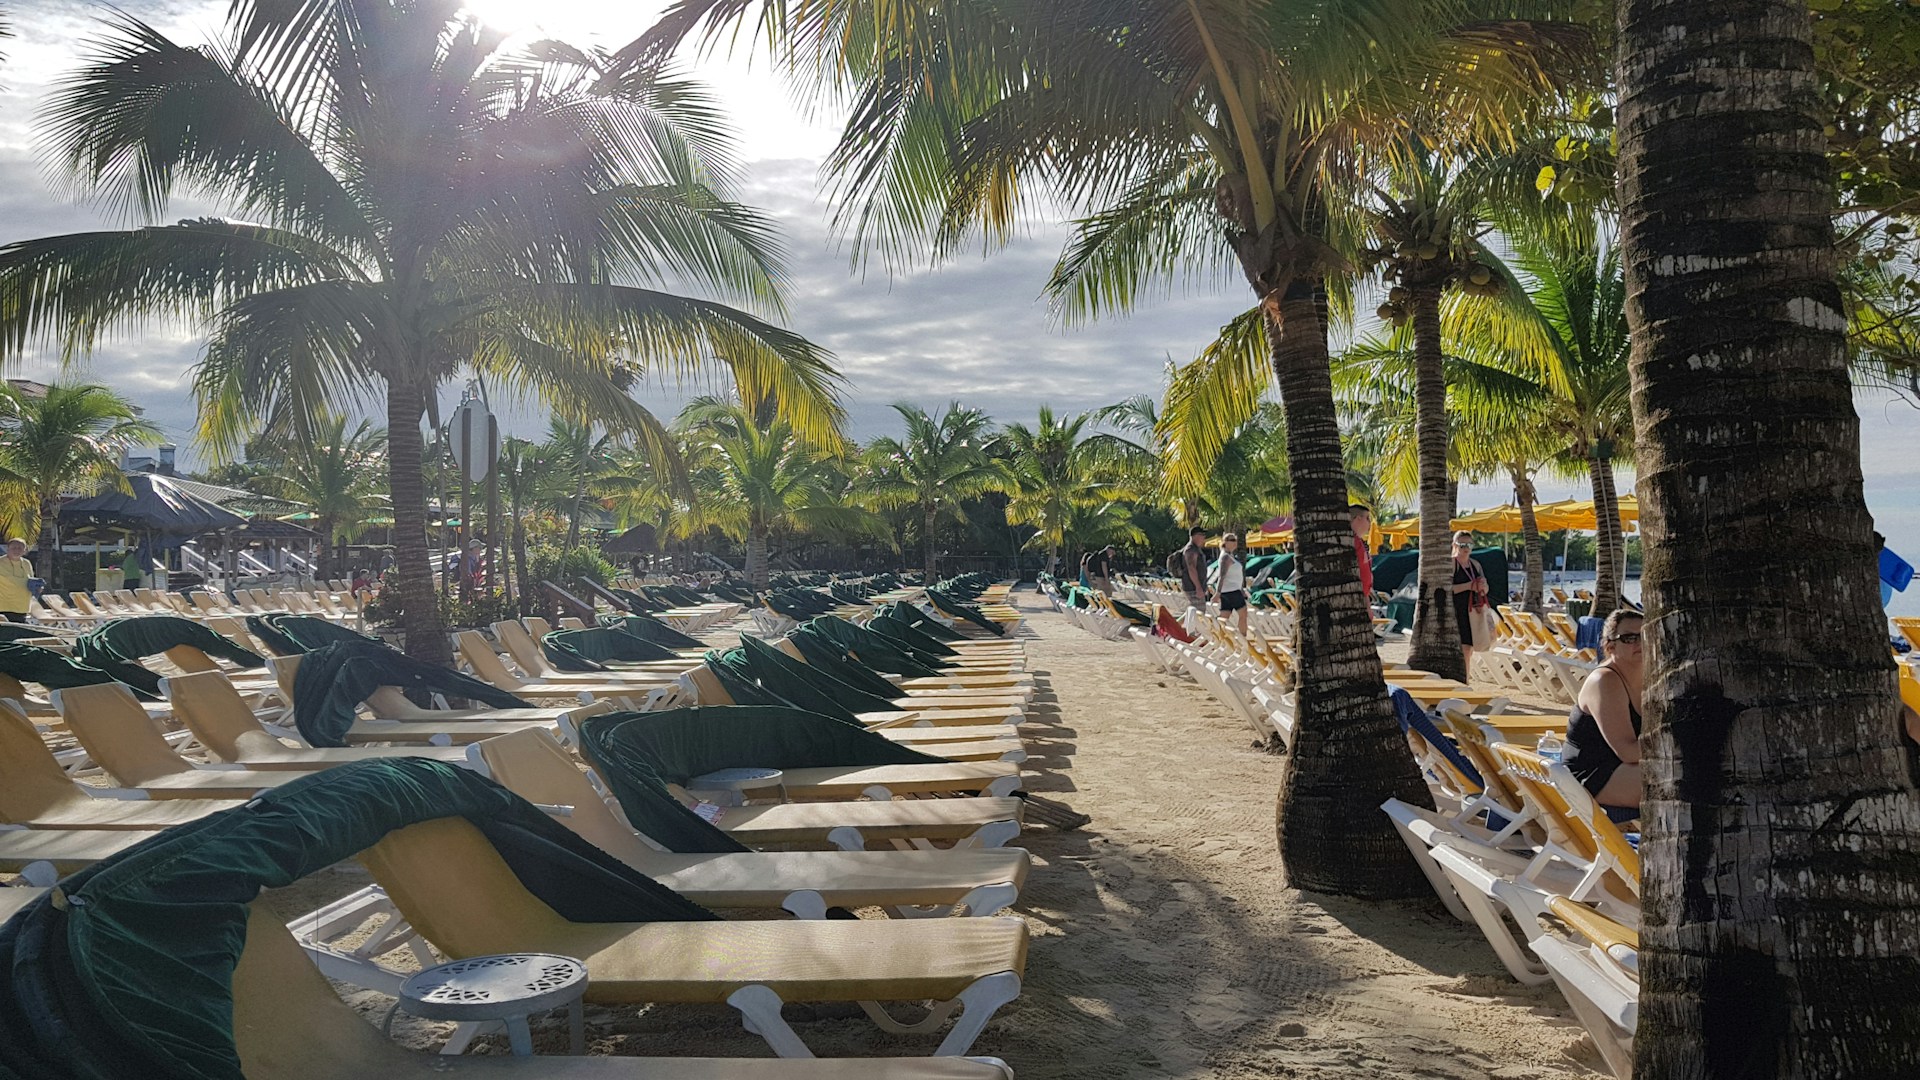 lots of beach chairs set up for guests facing the ocean at Mahogany Bay, Honduras.